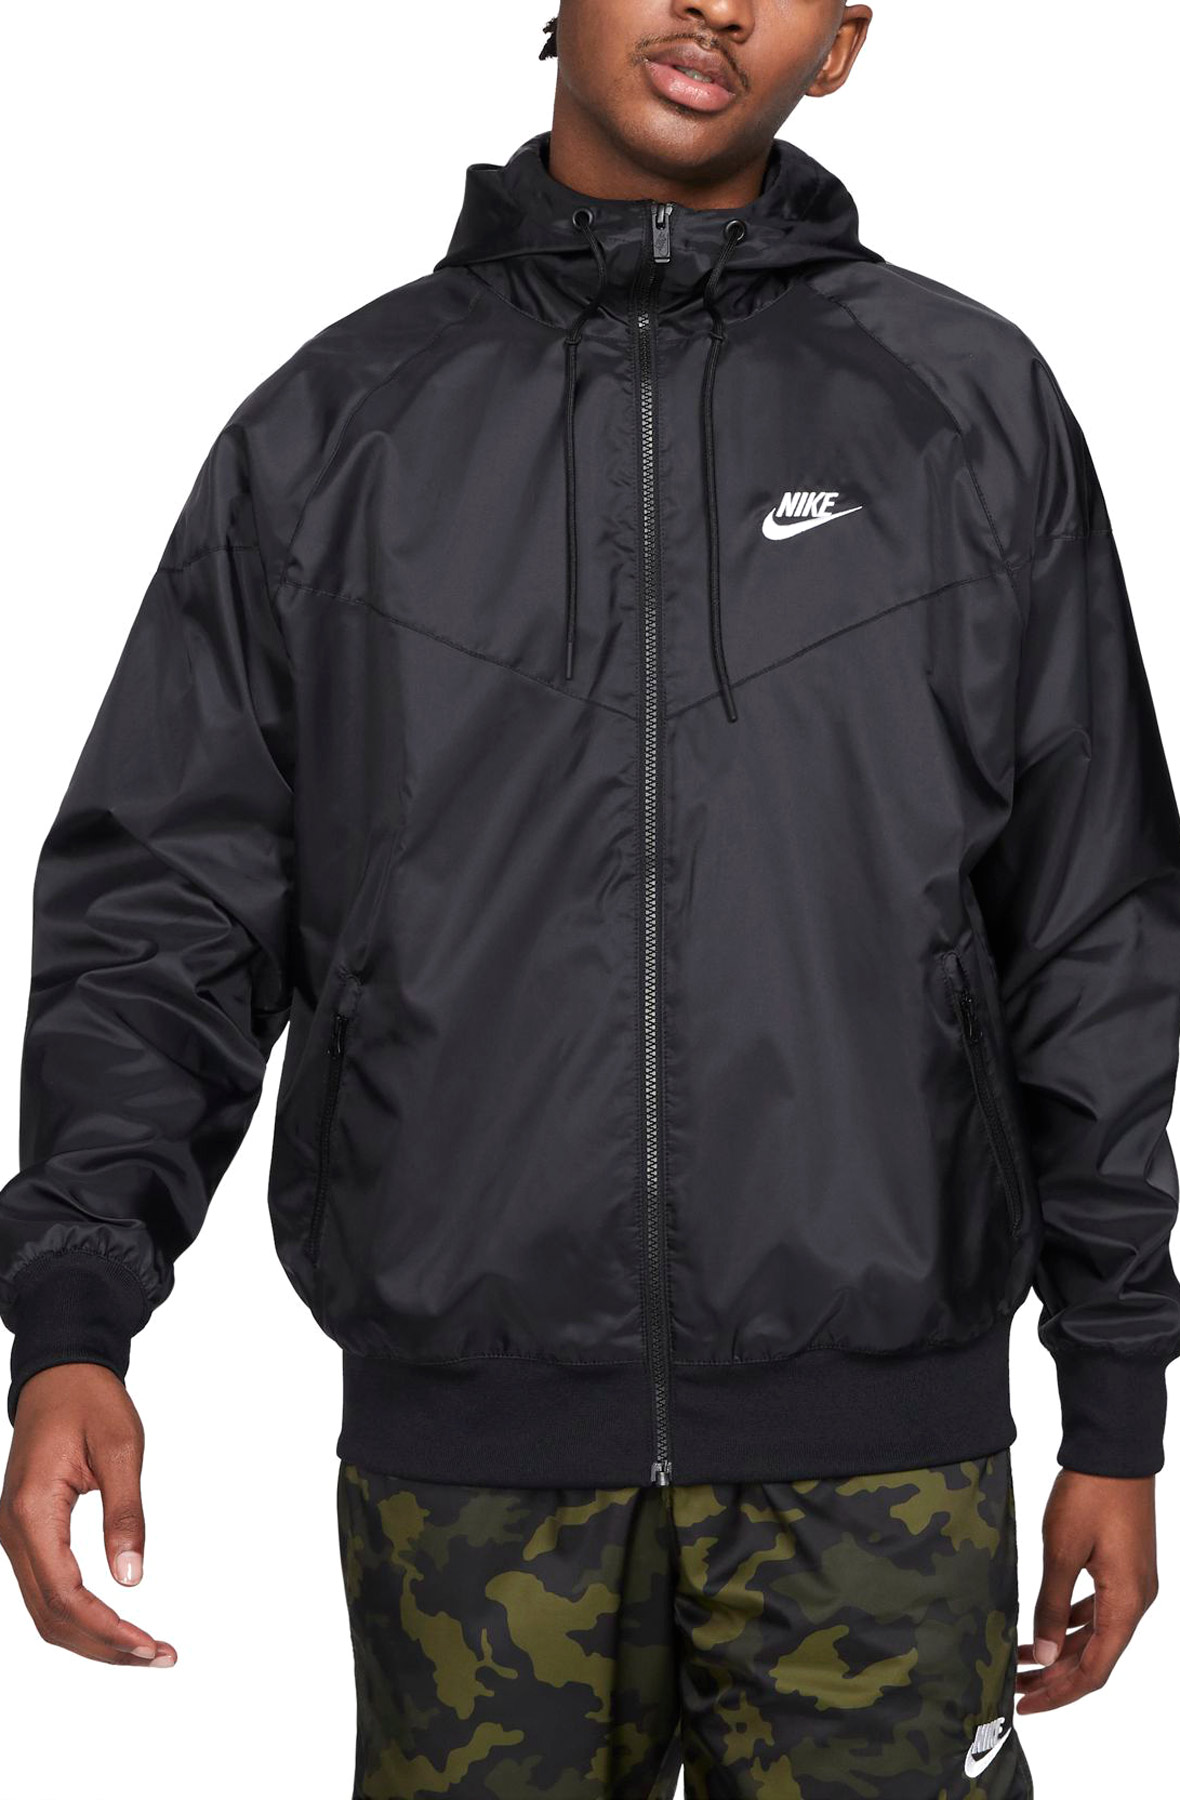 NIKE Sportswear Hooded Jacket DA0001 010